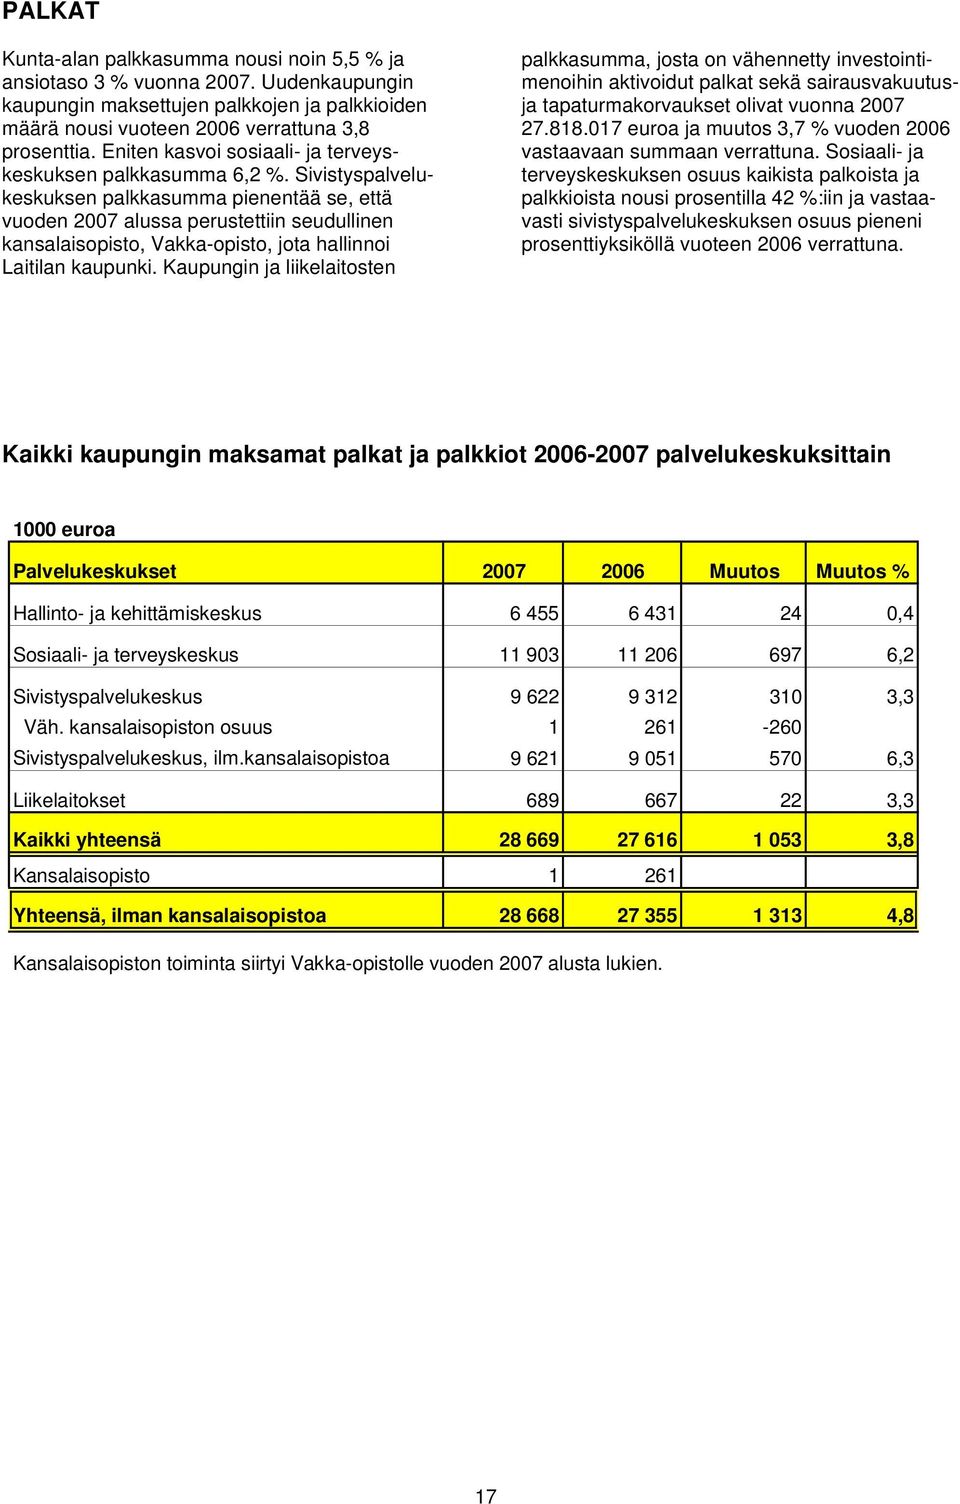 Sivistyspalvelukeskuksen palkkasumma pienentää se, että vuoden 2007 alussa perustettiin seudullinen kansalaisopisto, Vakka-opisto, jota hallinnoi Laitilan kaupunki.